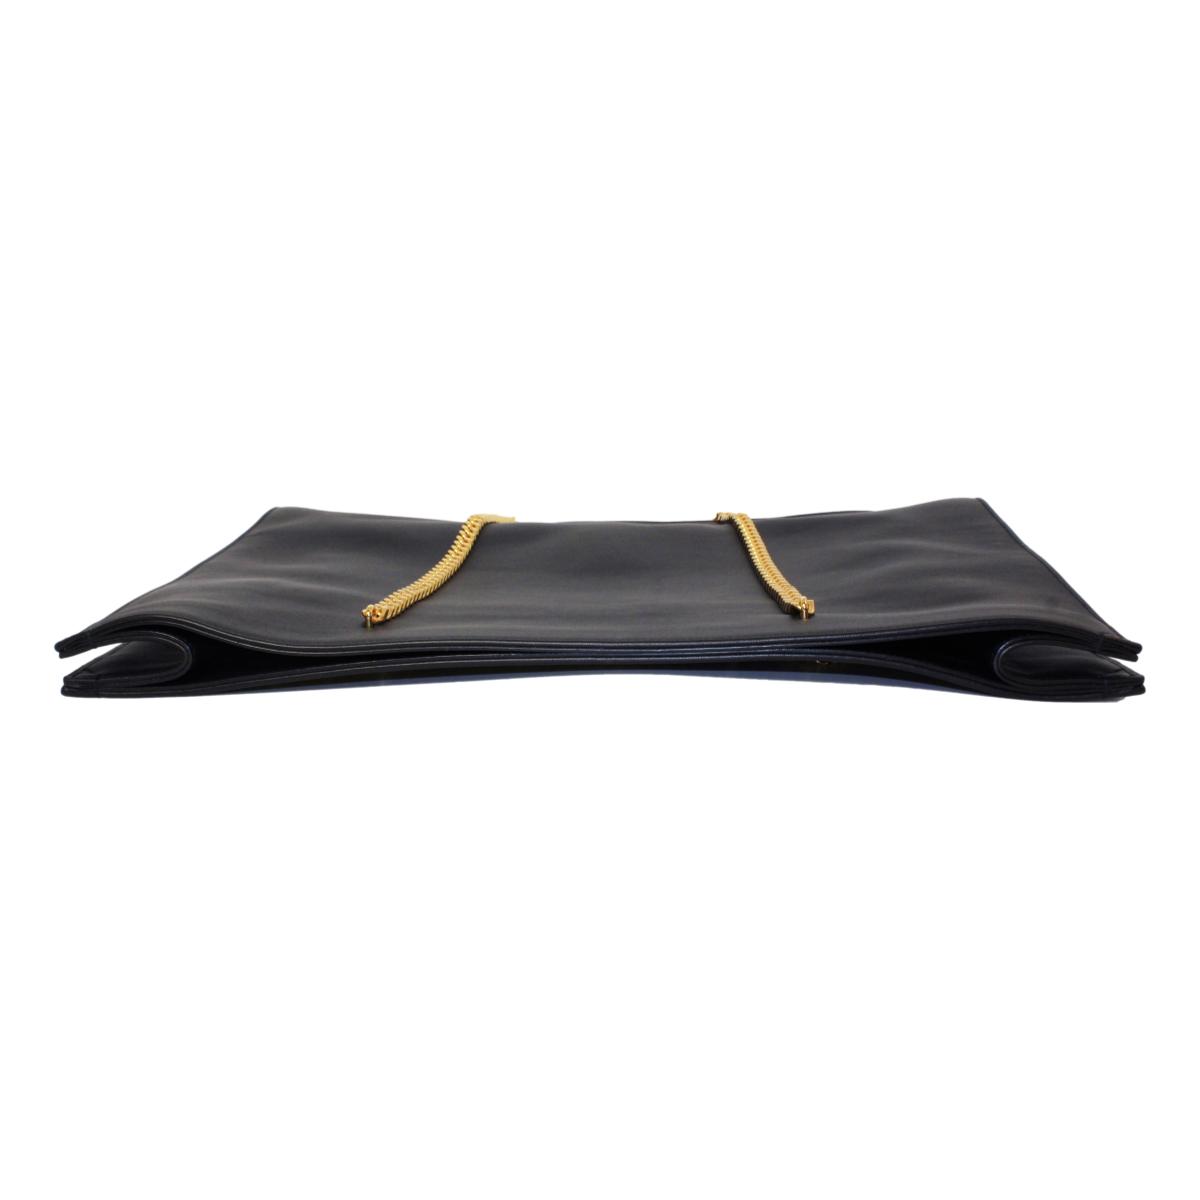 Saint Laurent Siena Ultra Lux Leather Chain Shoulder Bag - Black